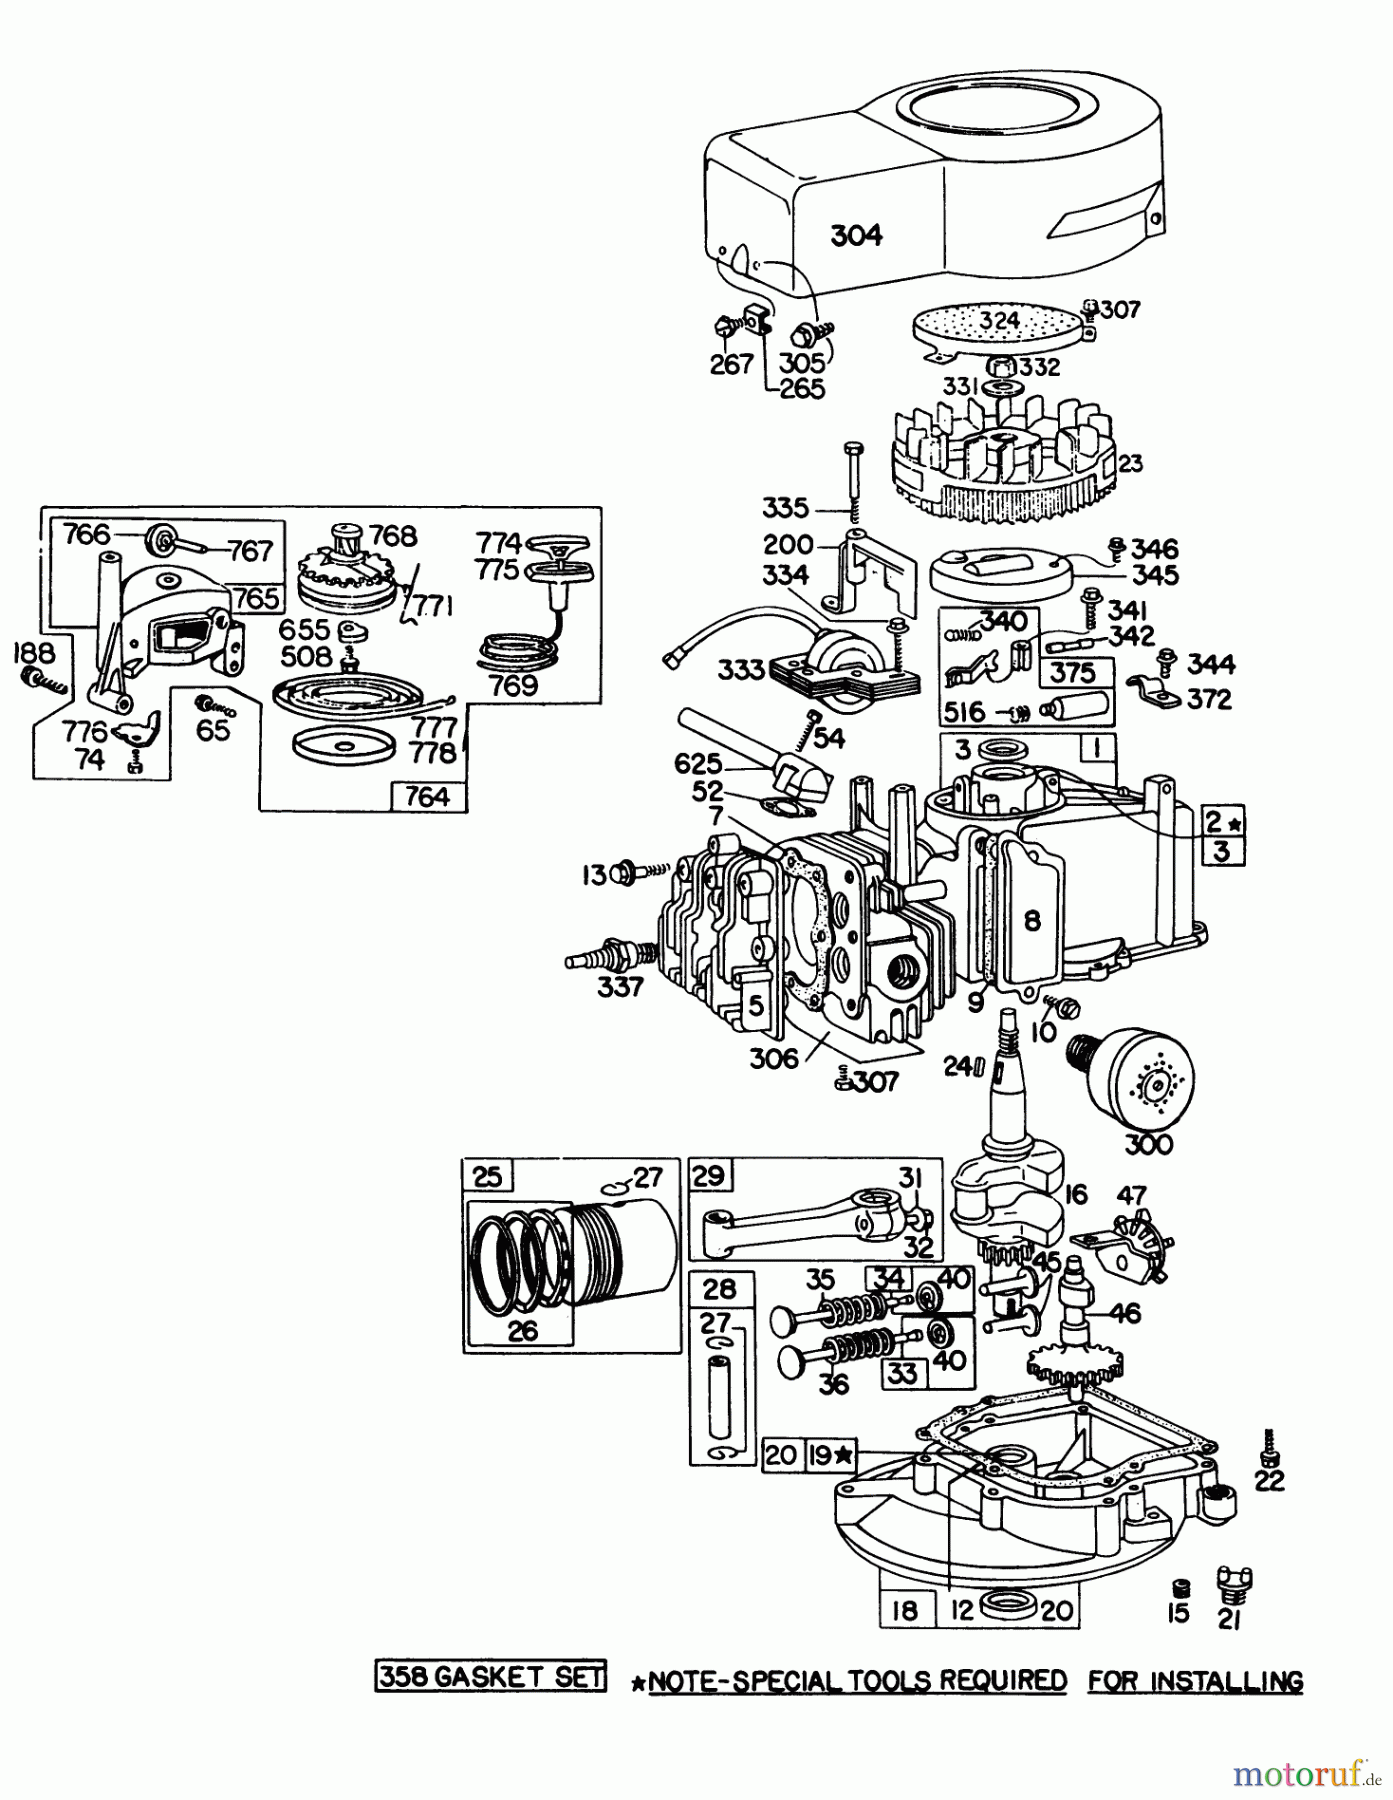  Toro Neu Mowers, Walk-Behind Seite 1 16277 - Toro Whirlwind Lawnmower, 1977 (7000001-7999999) ENGINE BRIGGS & STRATTON MODEL 92908-1743-01 FOR 21